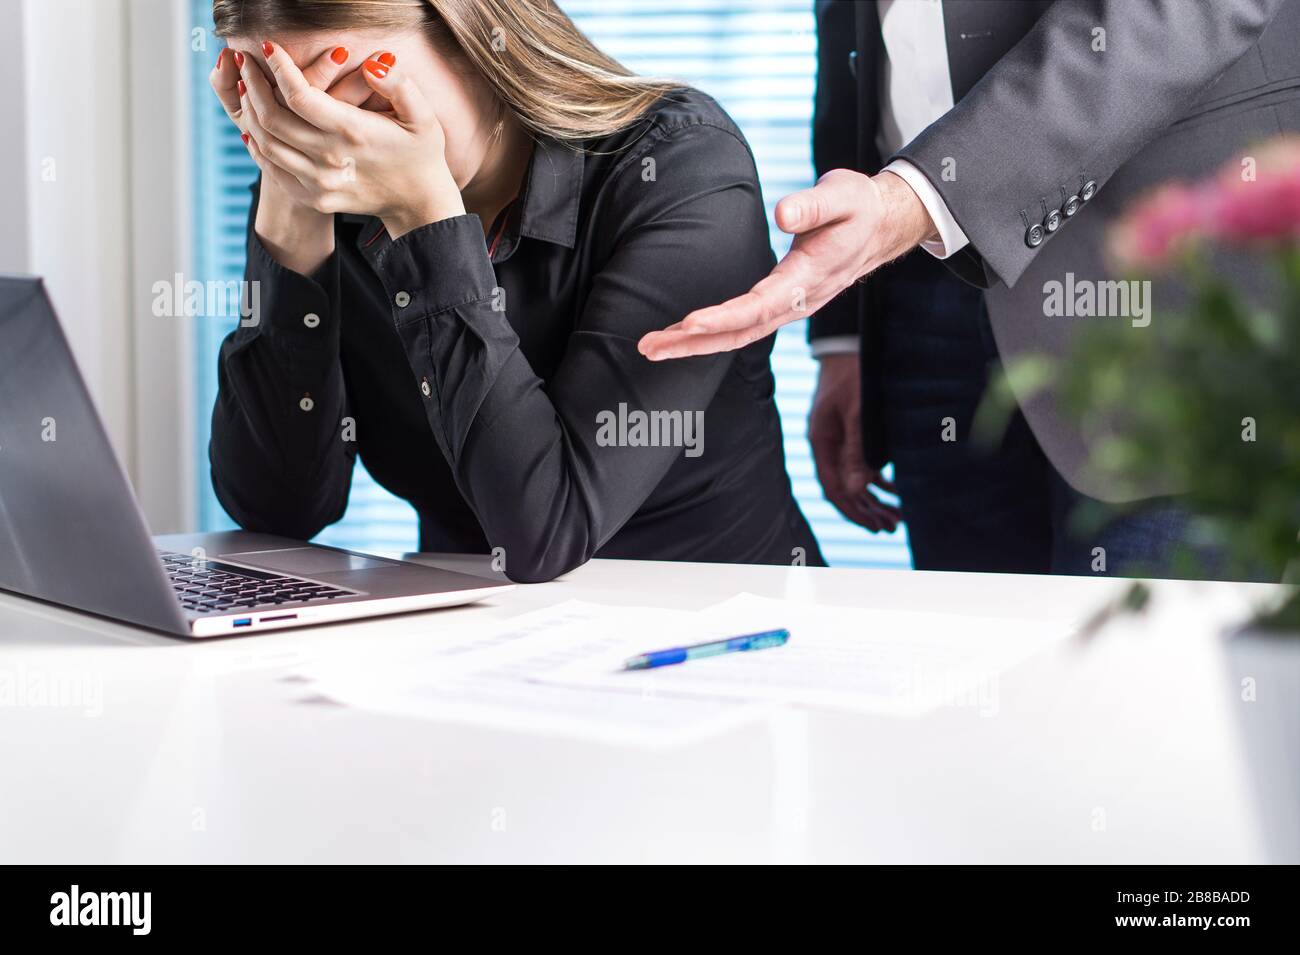 Une femme bouleversée qui pleurait au bureau. Tiré du travail. Homme d'affaires ou patron s'excusant, réconfortant ou assistant de soutien. Banque D'Images